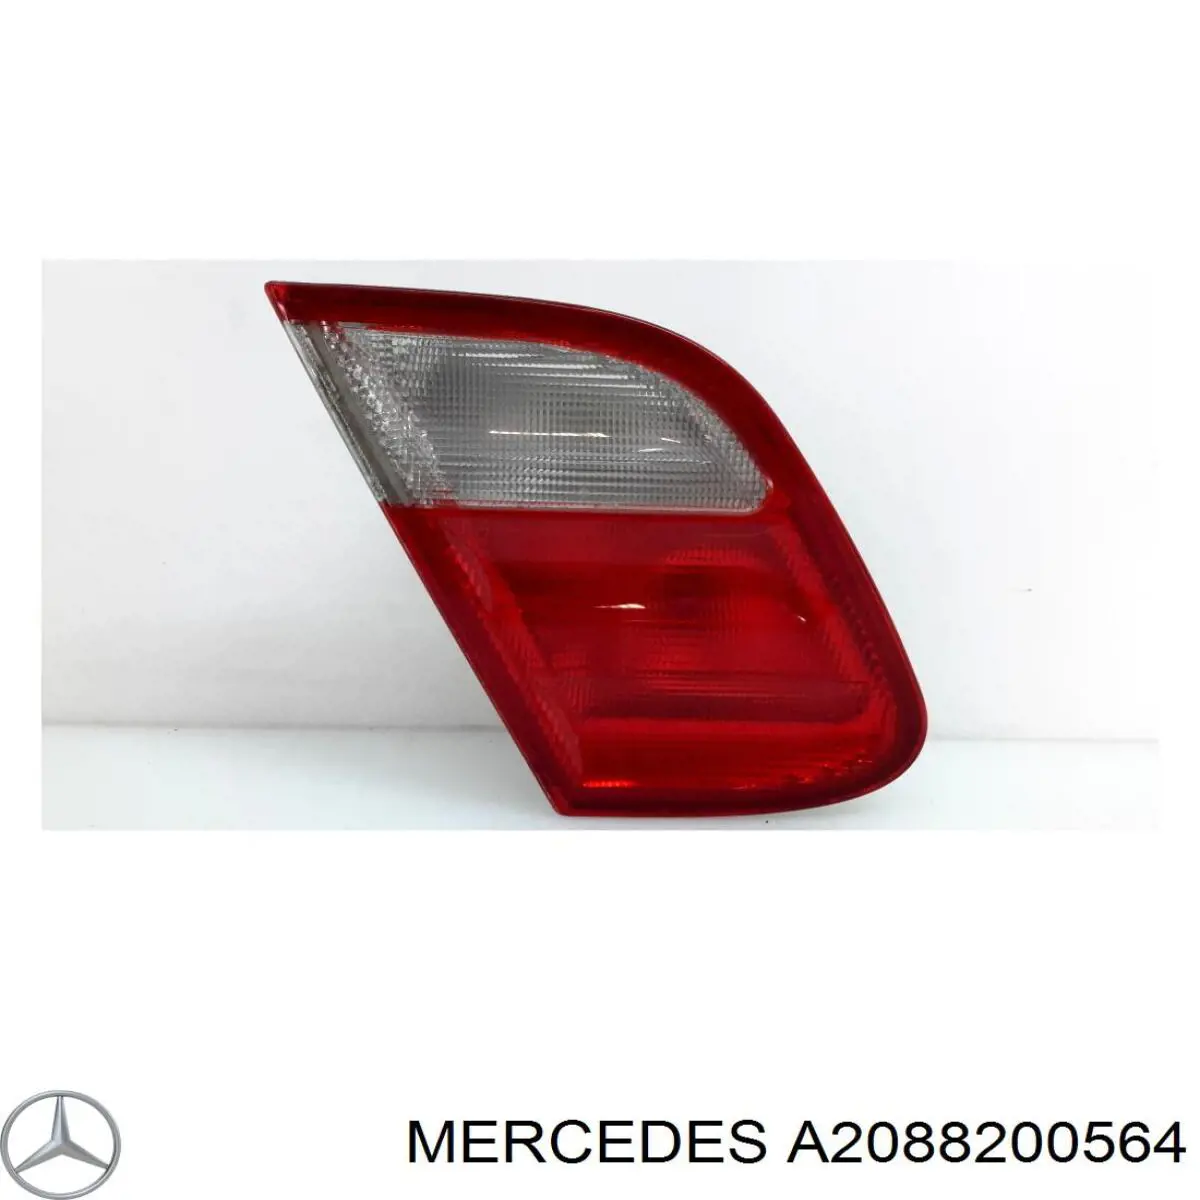 A2088200564 Mercedes lanterna traseira esquerda interna